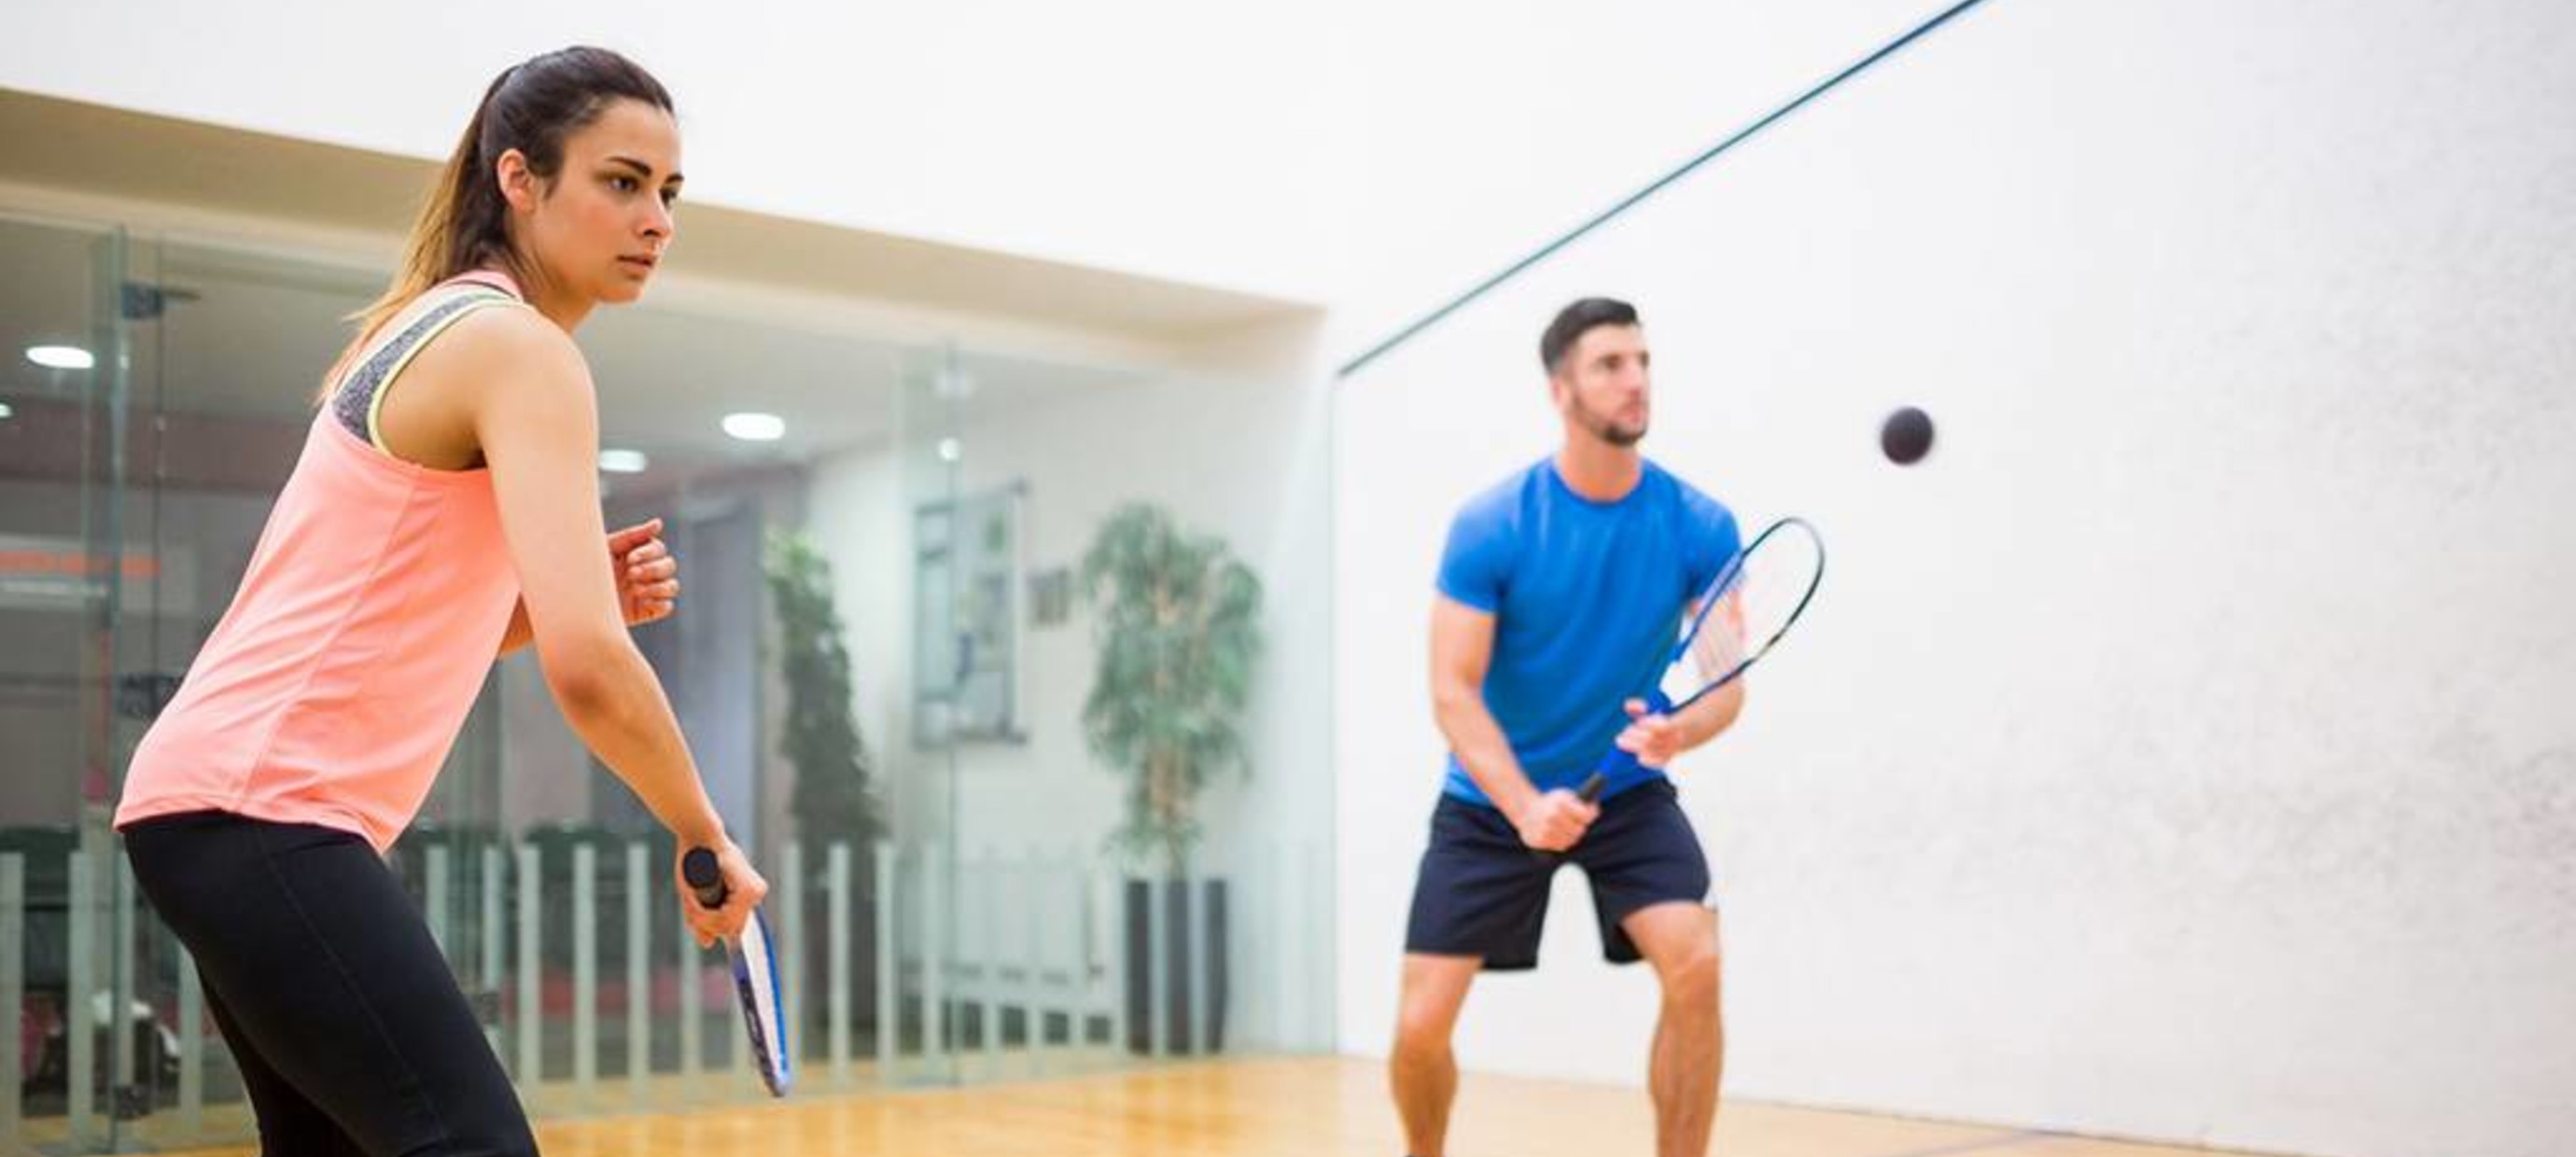 3 valuable beginner squash tips